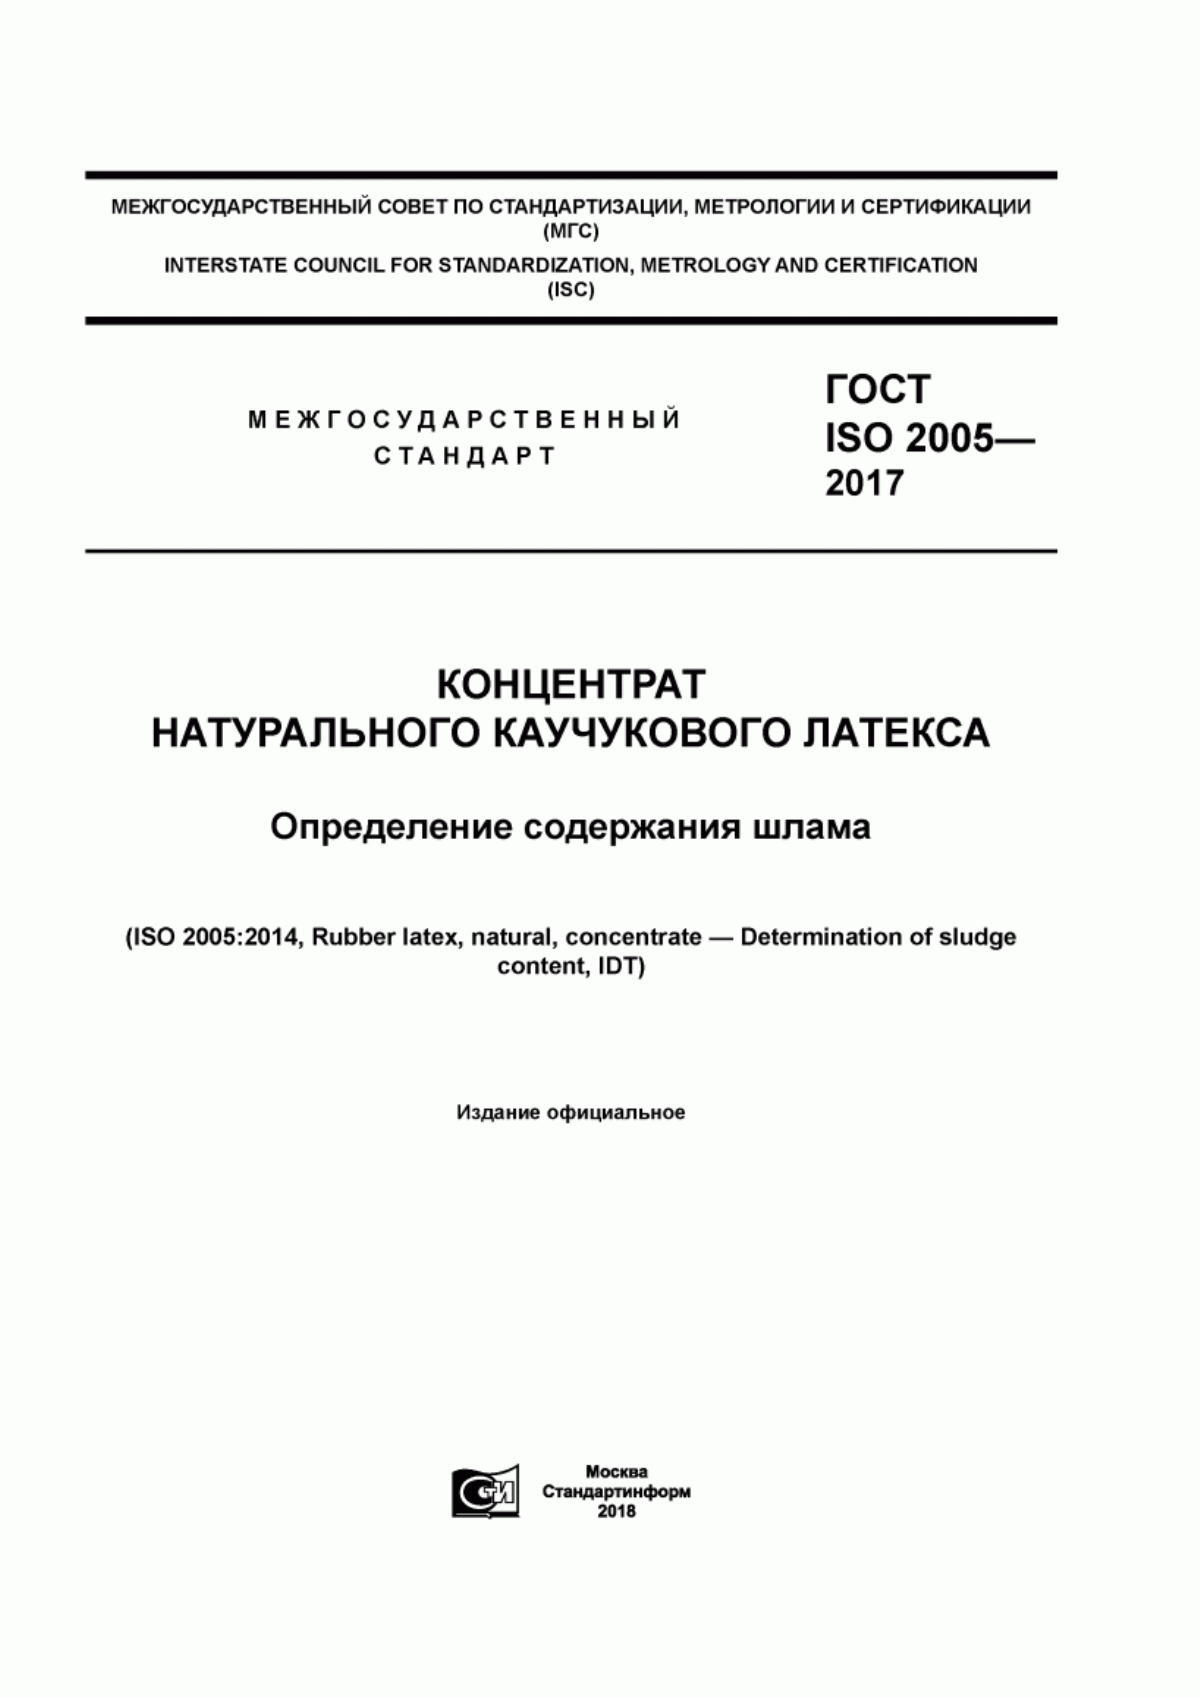 ГОСТ ISO 2005-2017 Концентрат натурального каучукового латекса. Определение содержания шлама